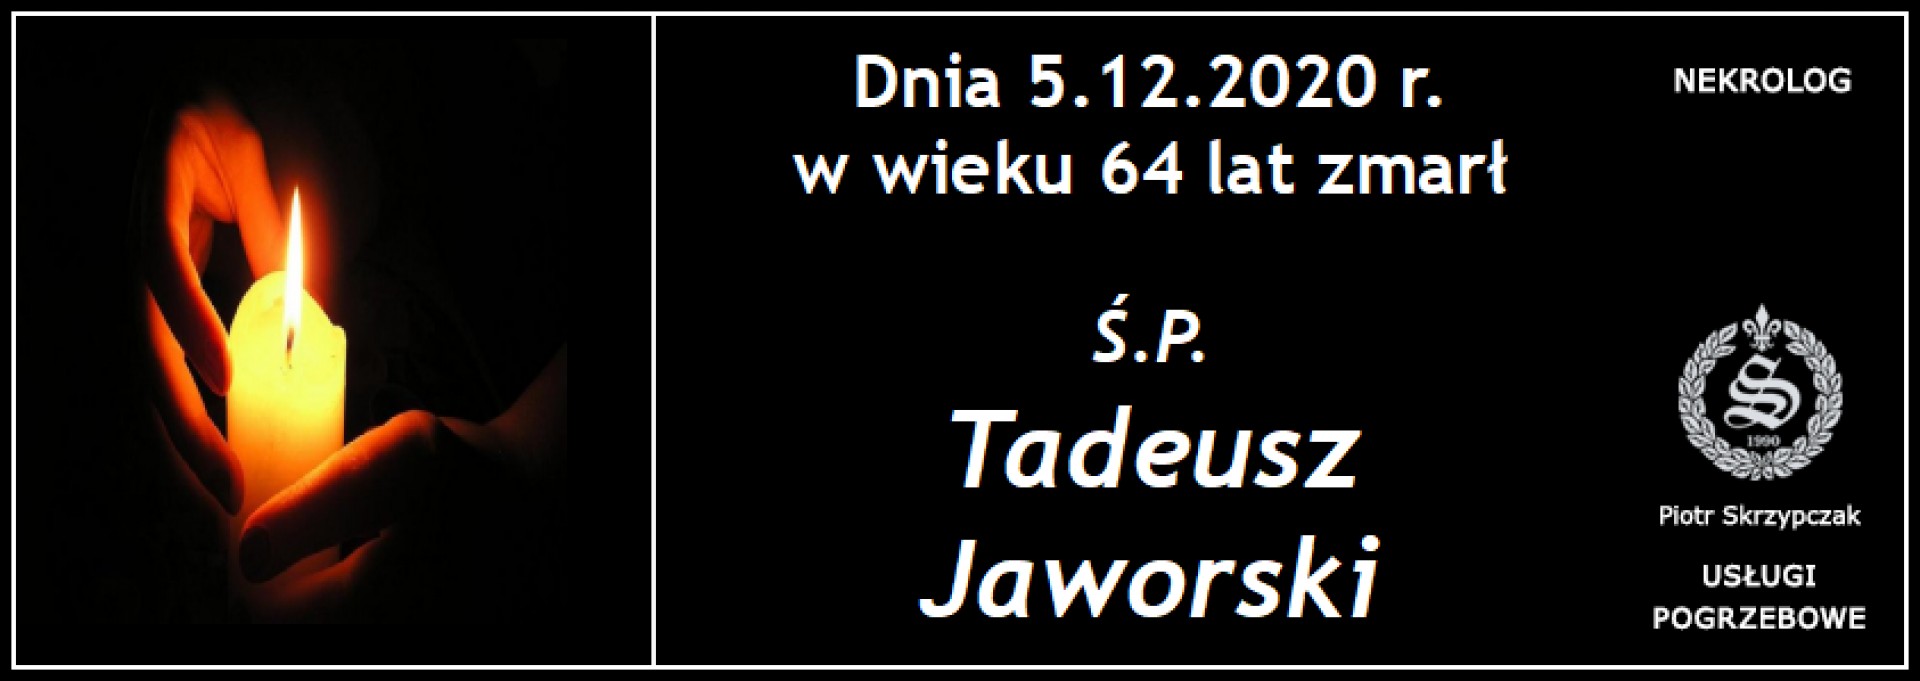 Ś.P. Tadeusz Jaworski